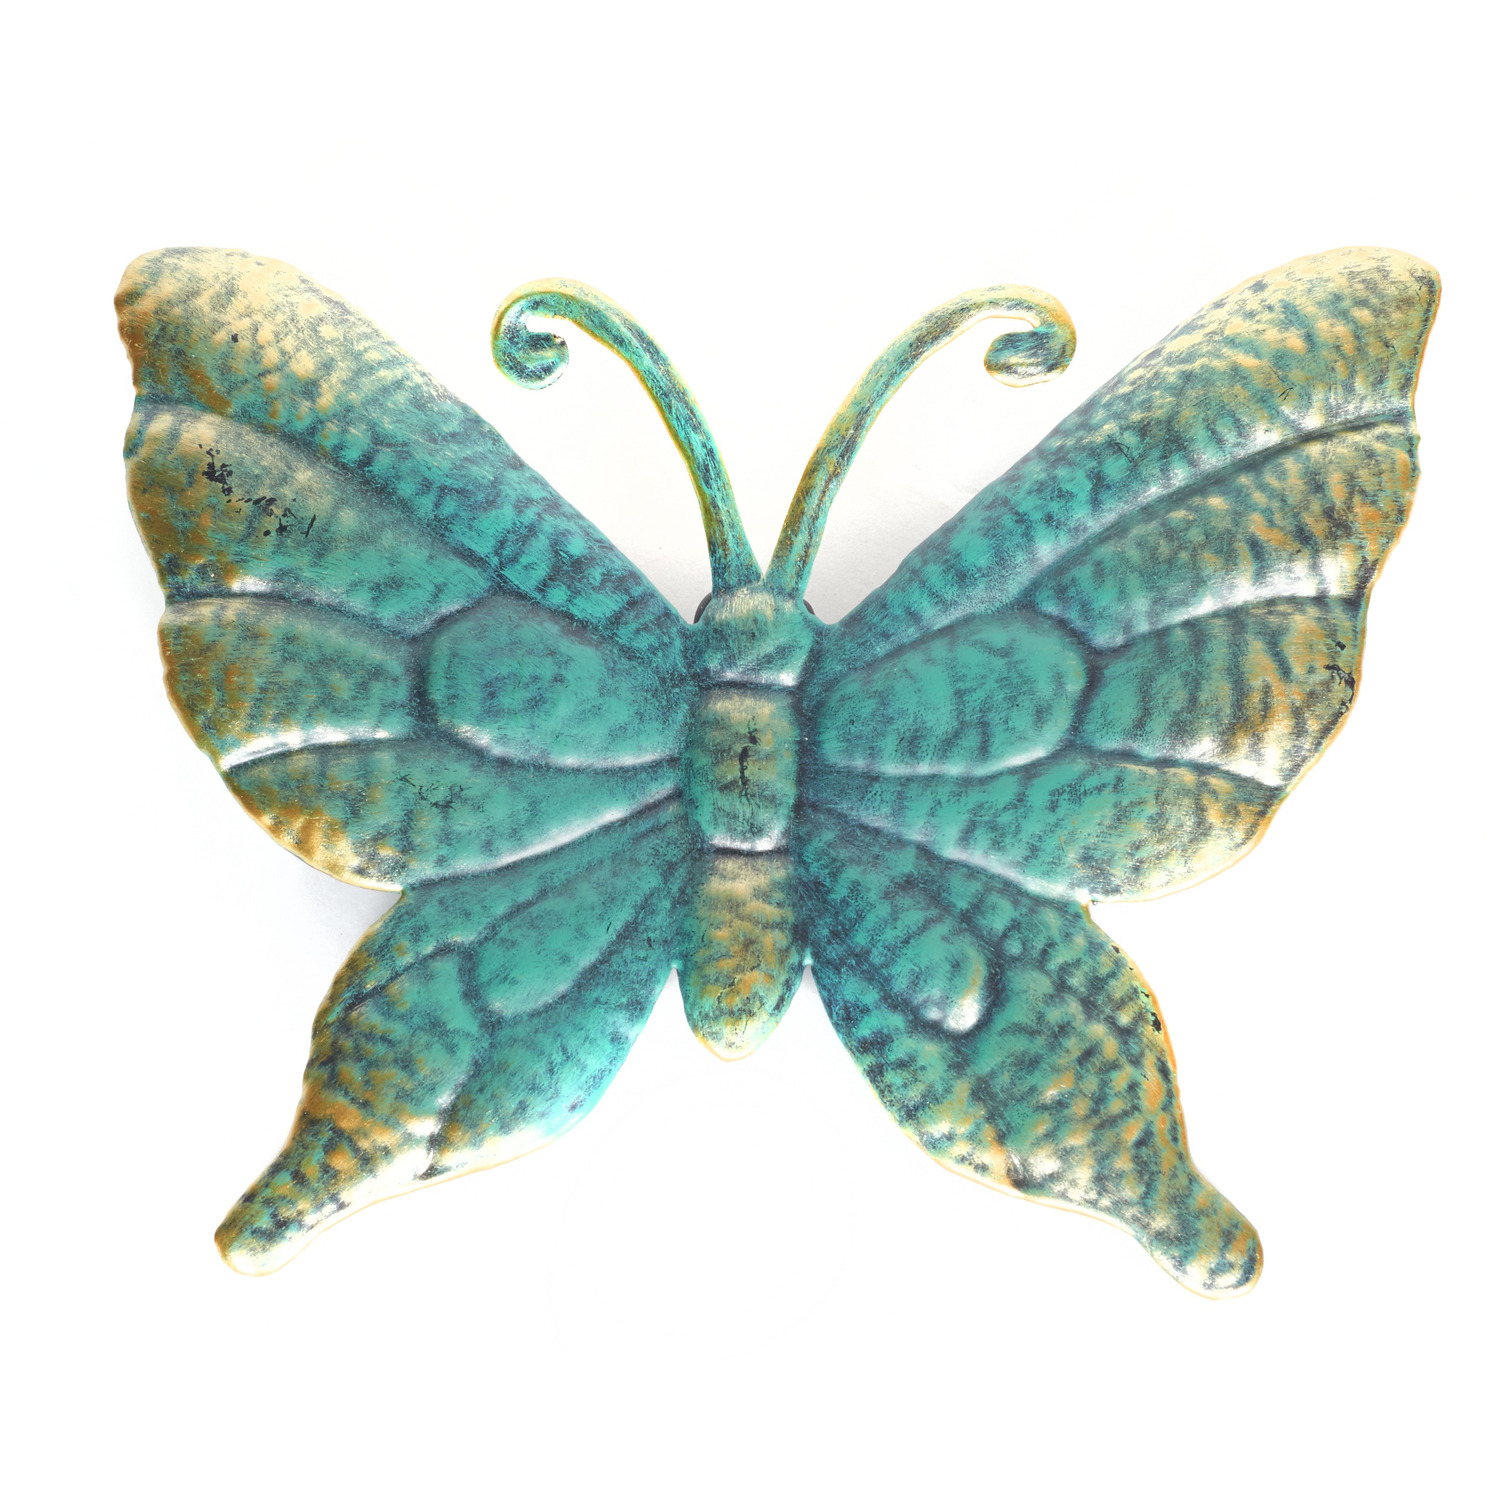 Afbeelding 1x Turquoise/goud metalen tuindecoratie vlinder 22 cm door Animals Giftshop